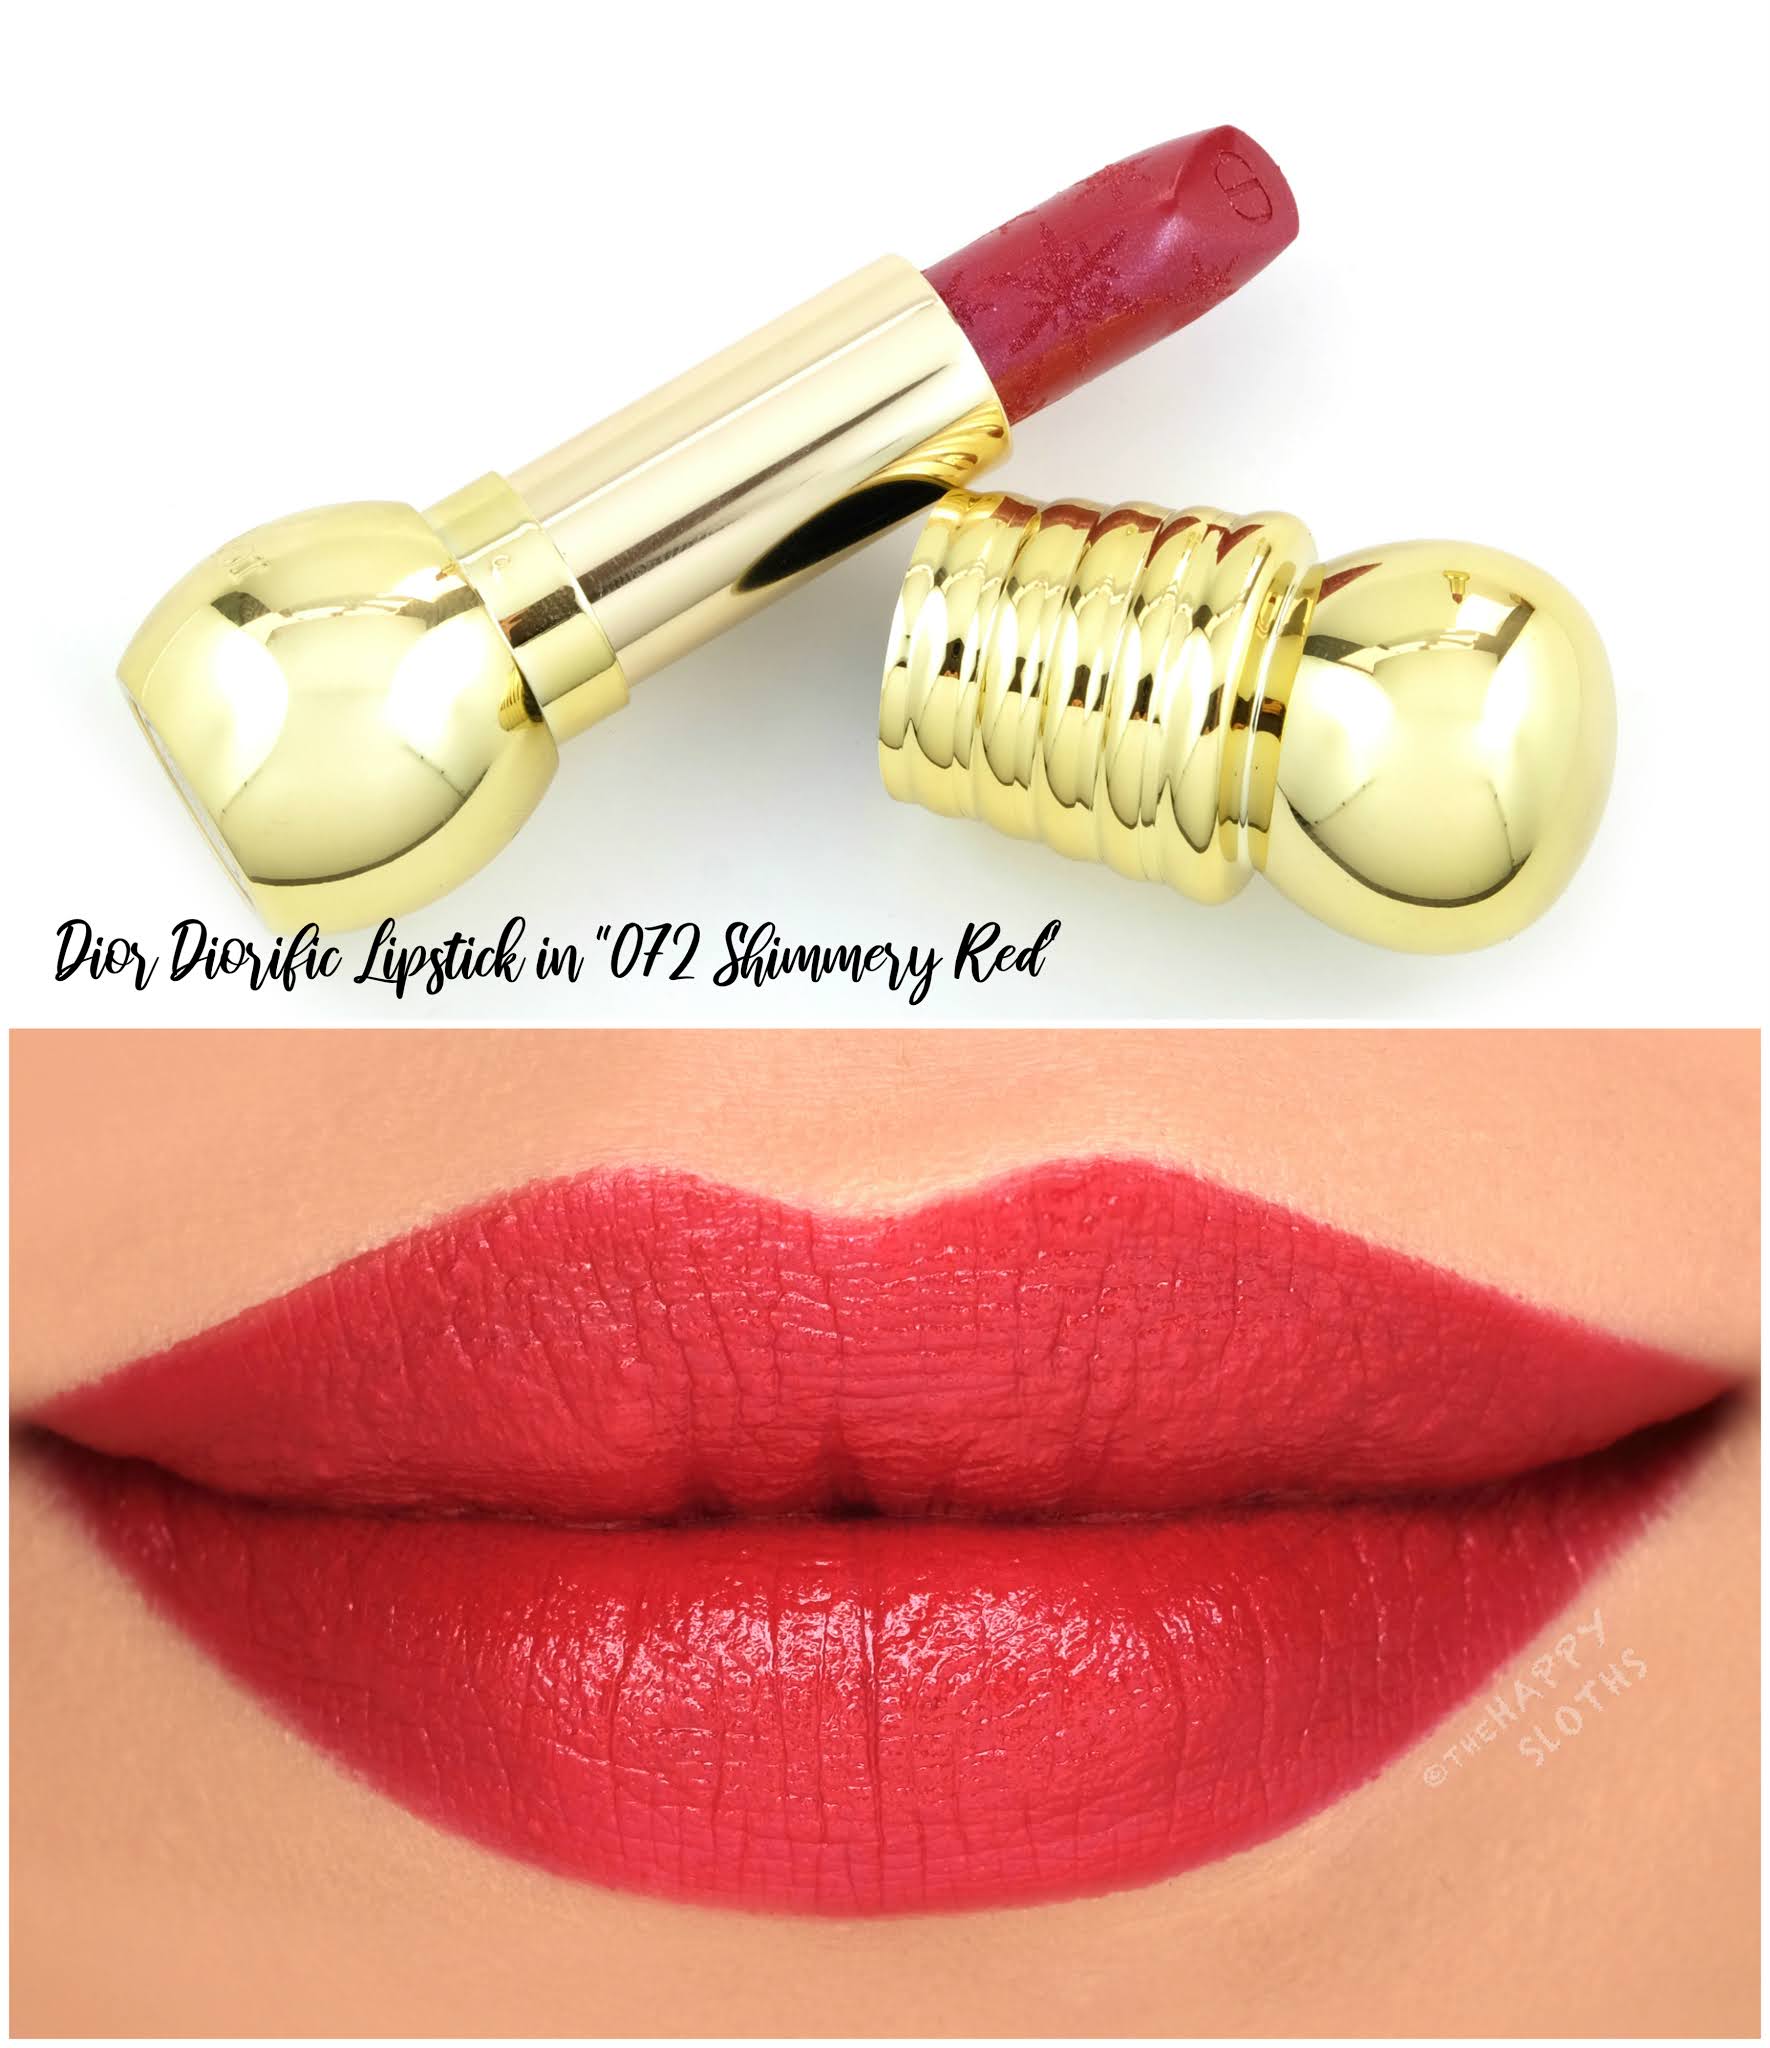 diorific lipstick shades